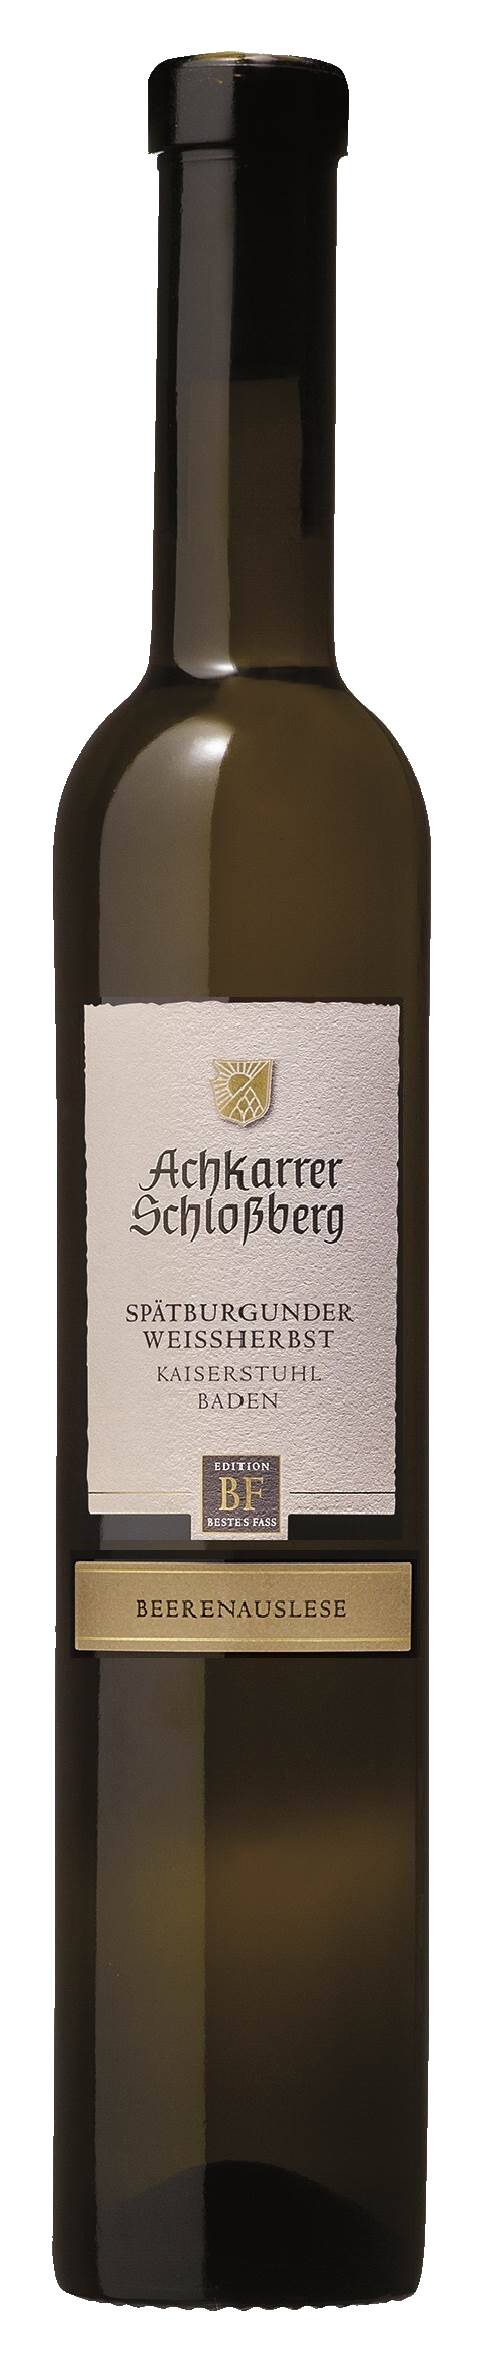 Achkarrer Schlossberg Spätburgunder Weissherbst - Beerenauslese -